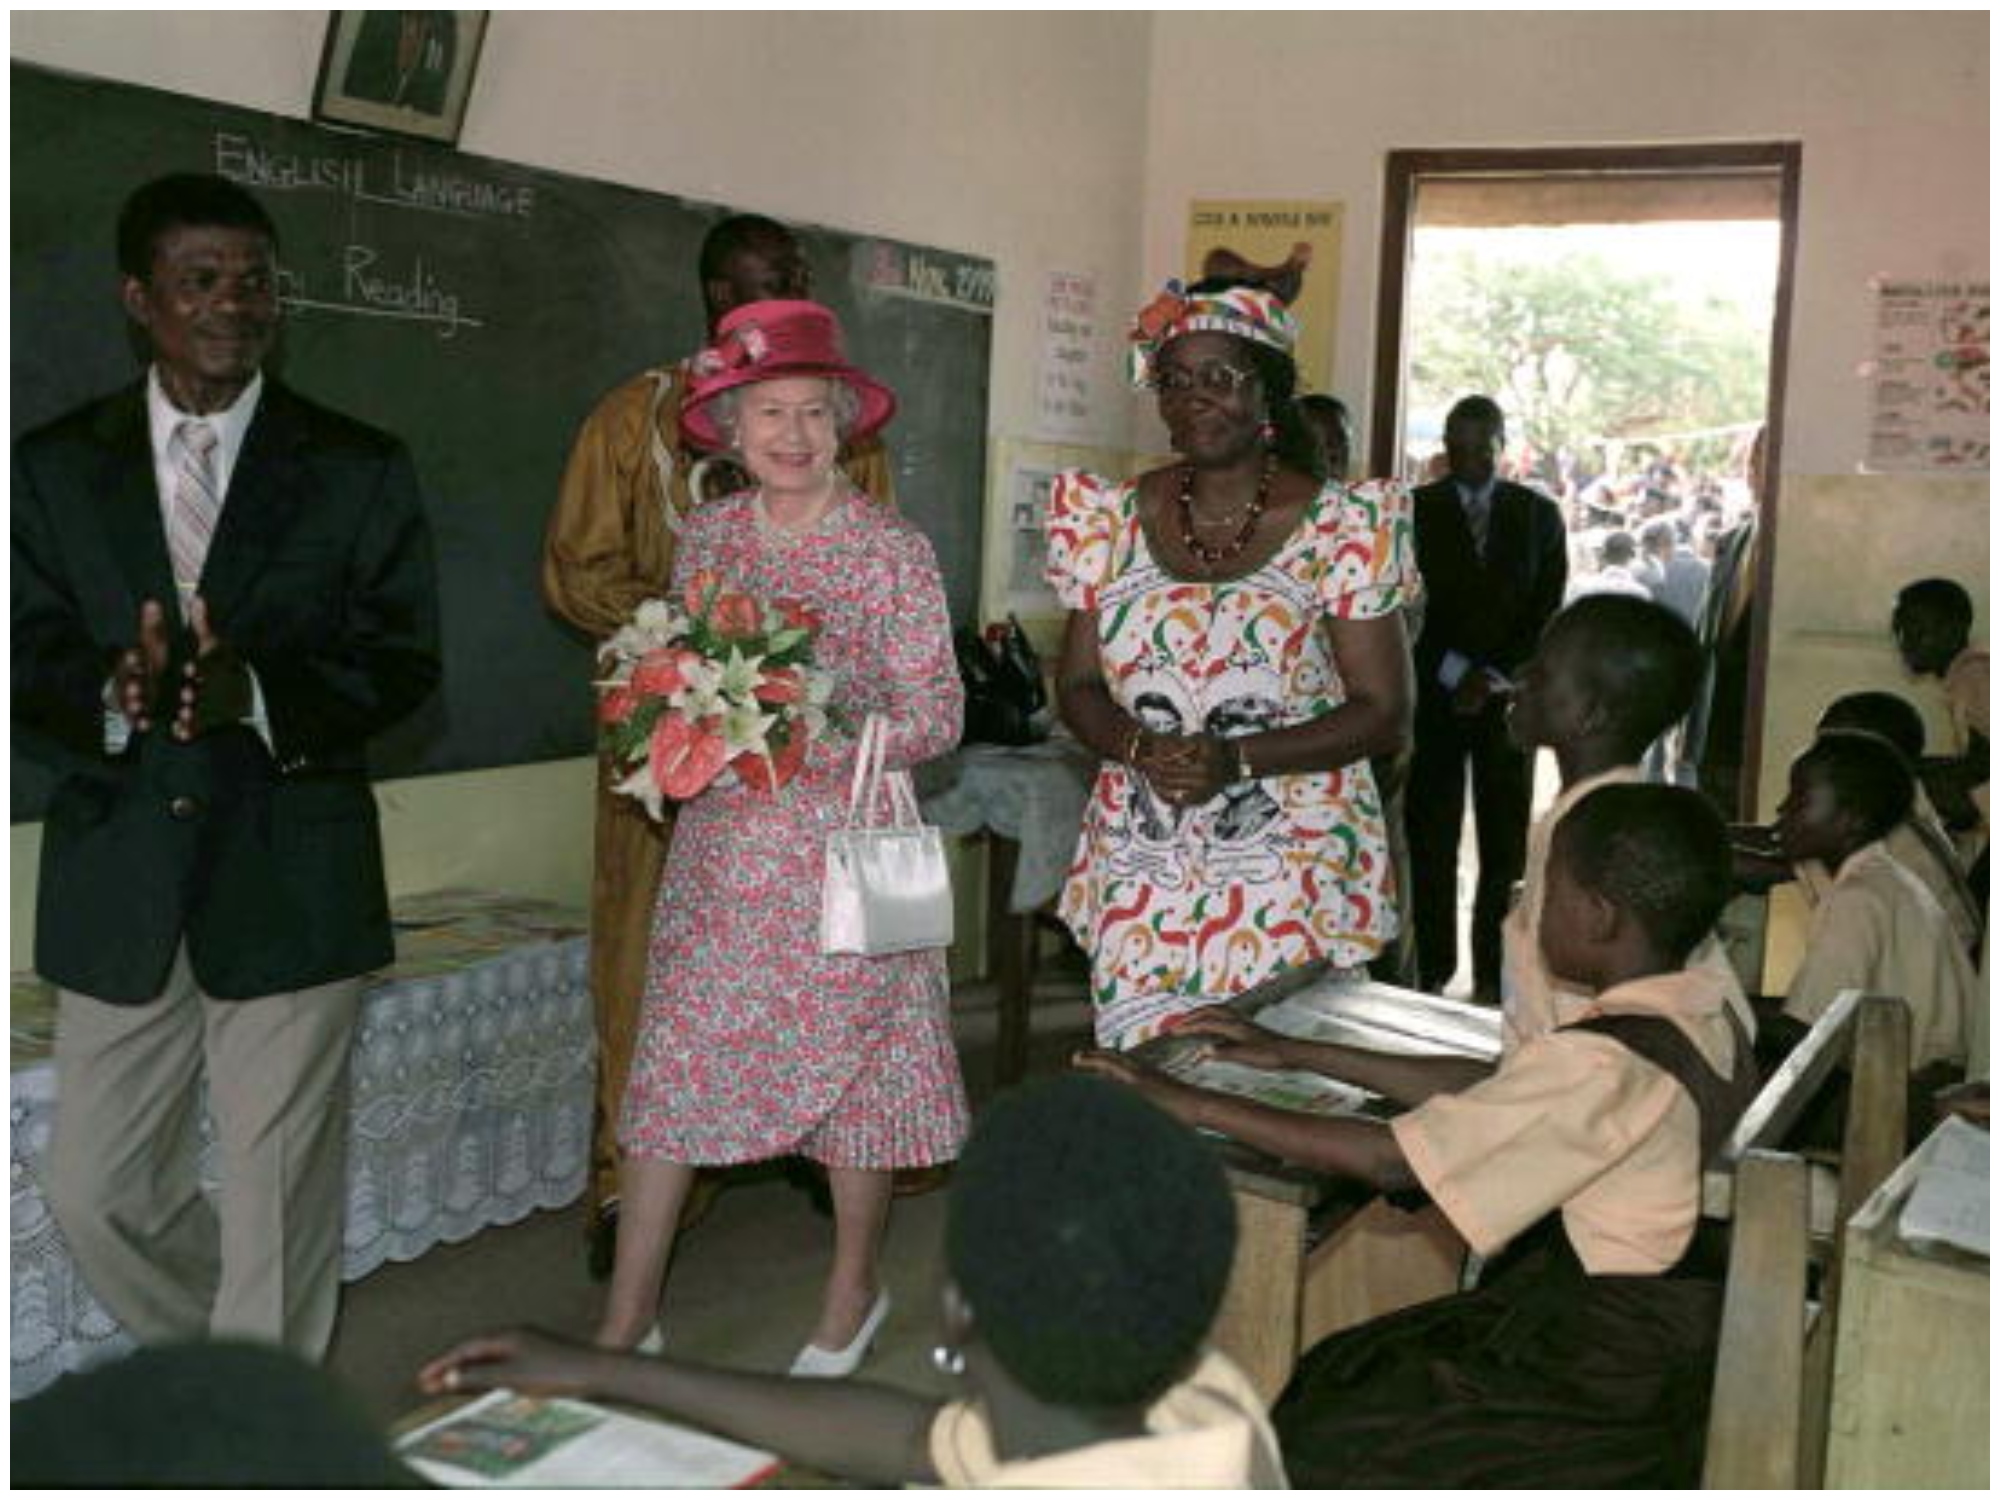 Queen Elizabeth II at Wireless classroom